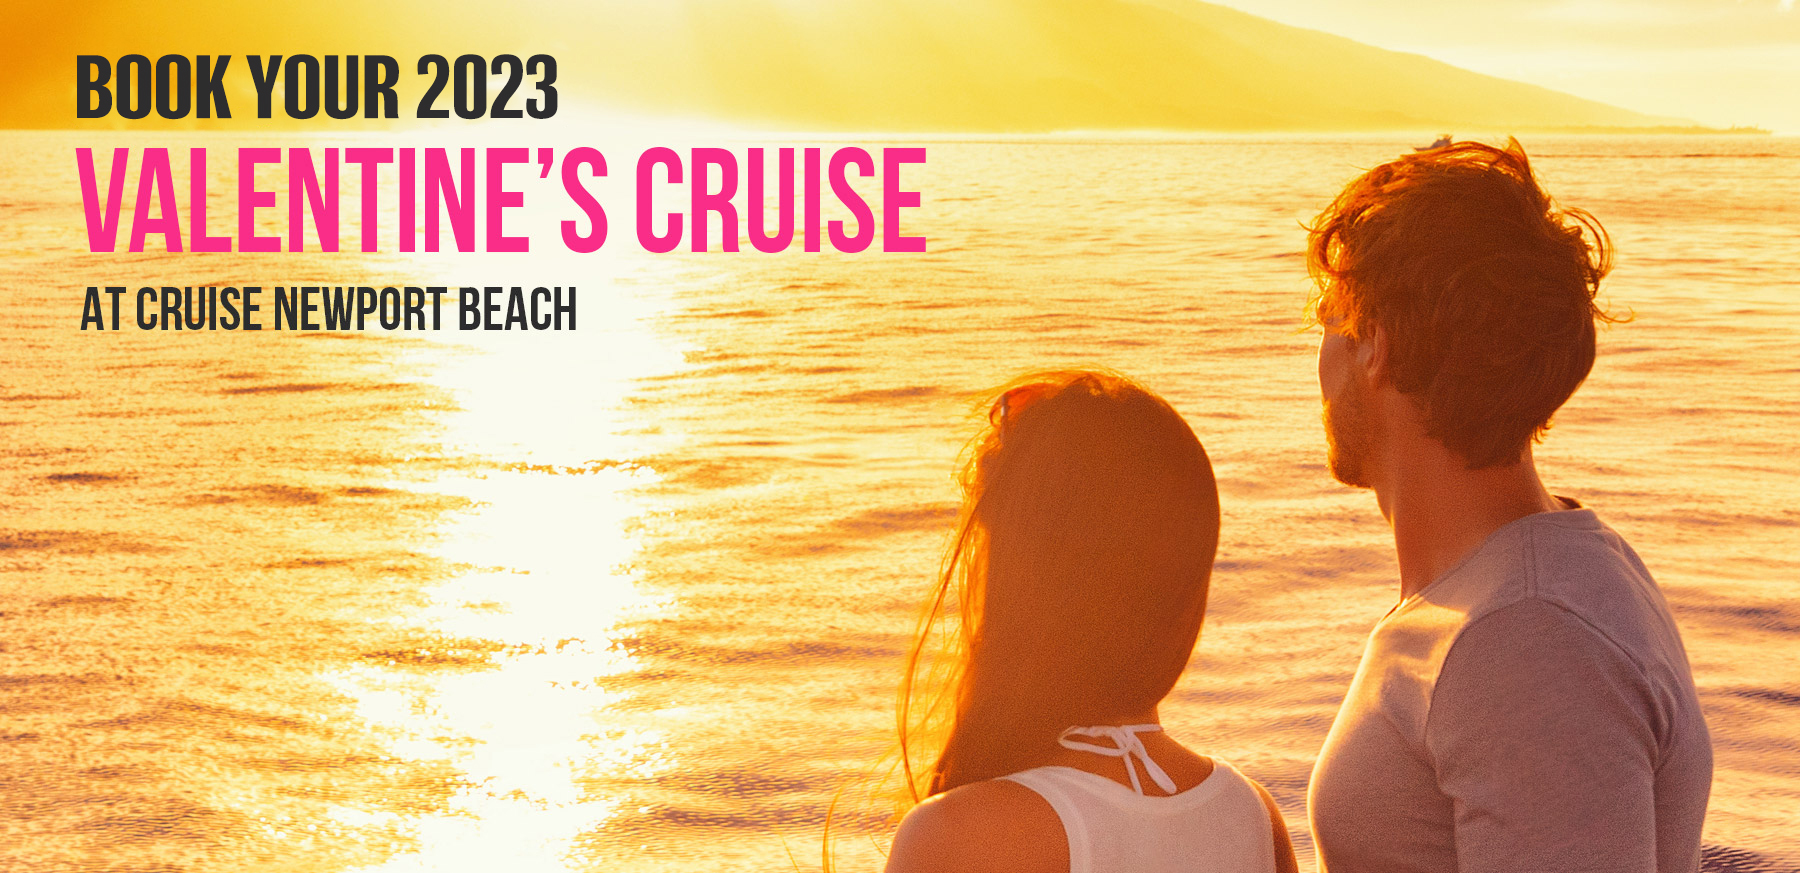 Valentine's Cruises Cruise Newport Beach